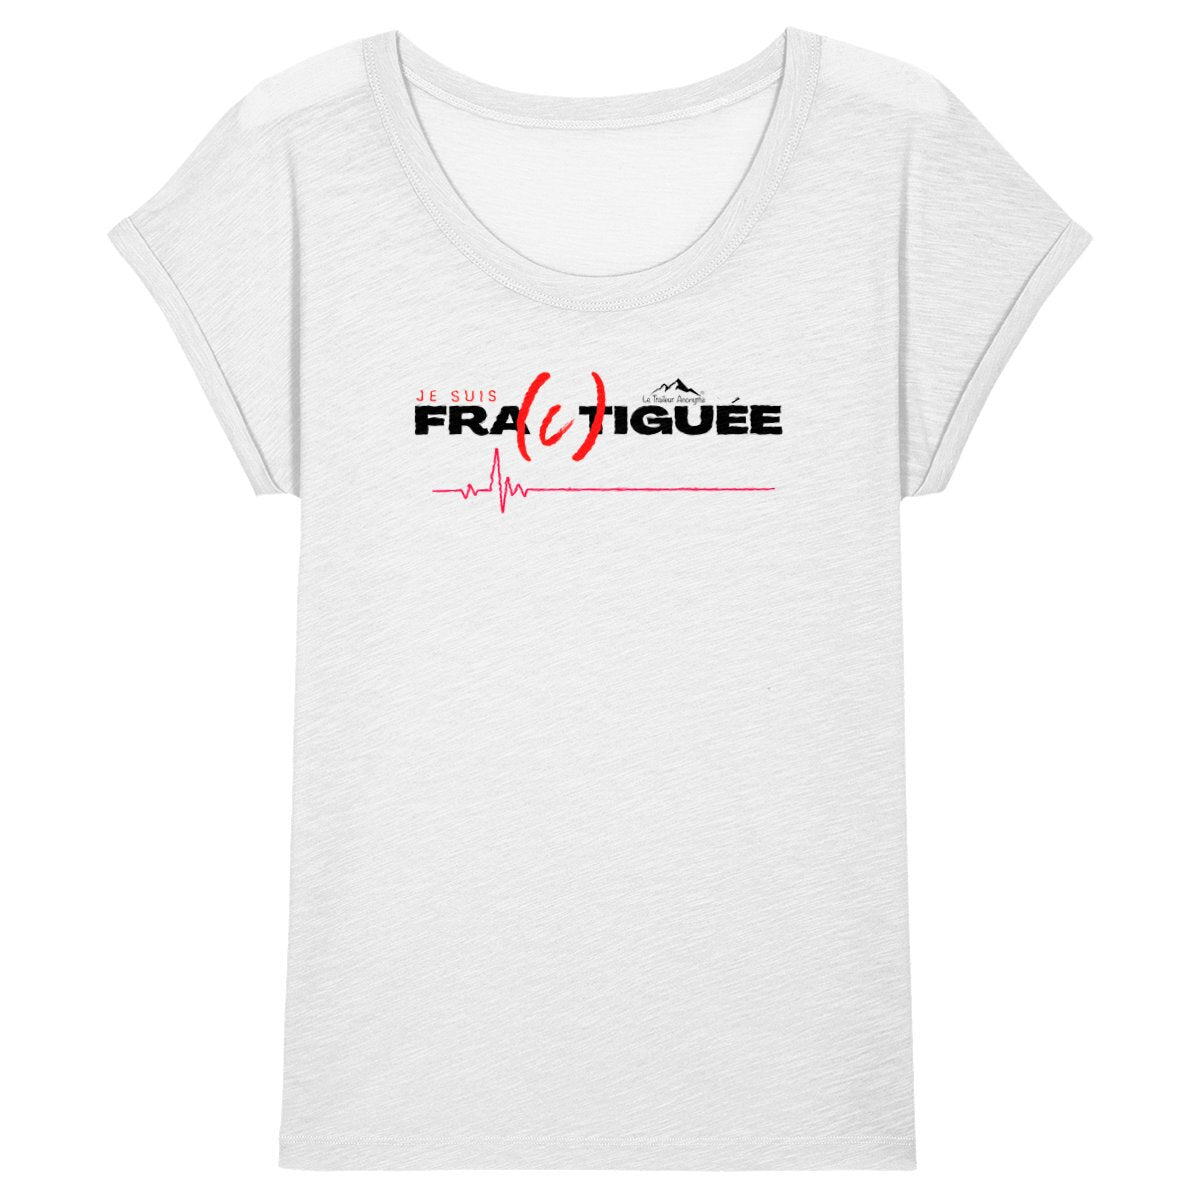 T-Shirt Coton Bio Slub Premium - Femme - Collection "Fractiguée" - Le Traileur Anonyme